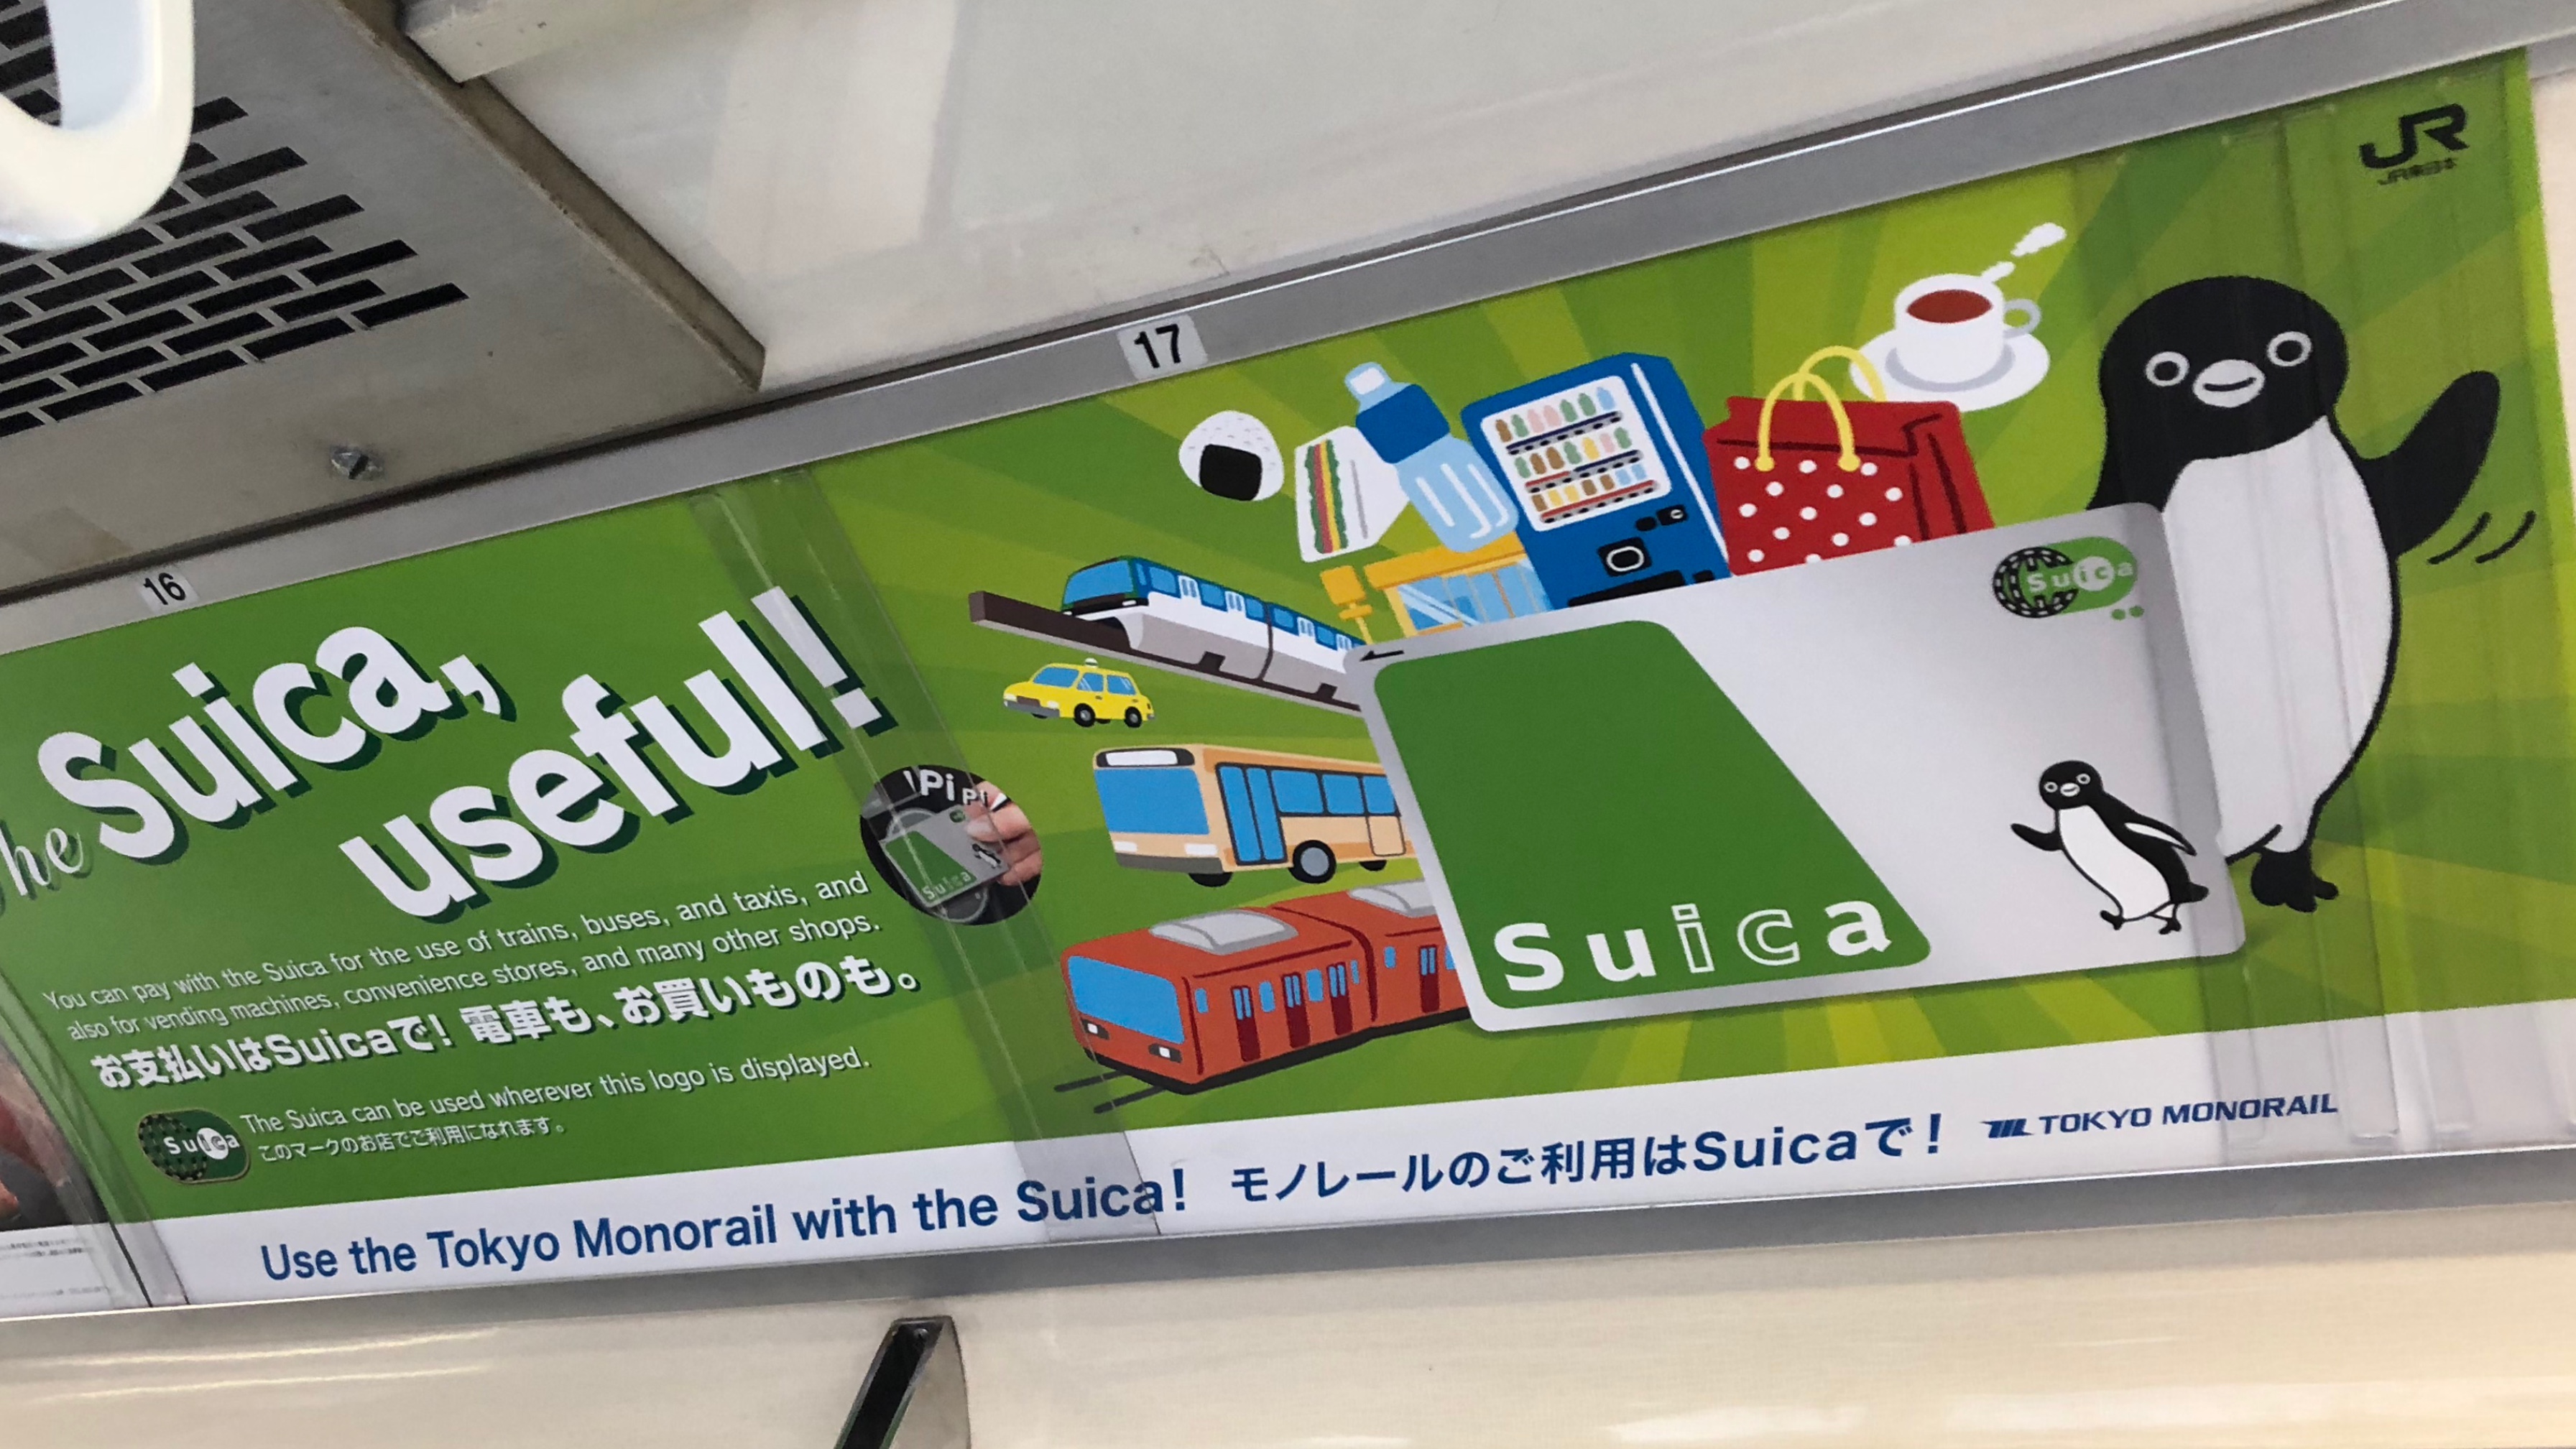 Überall präsent in Japan: Eine Werbung für SUICA im Zug.